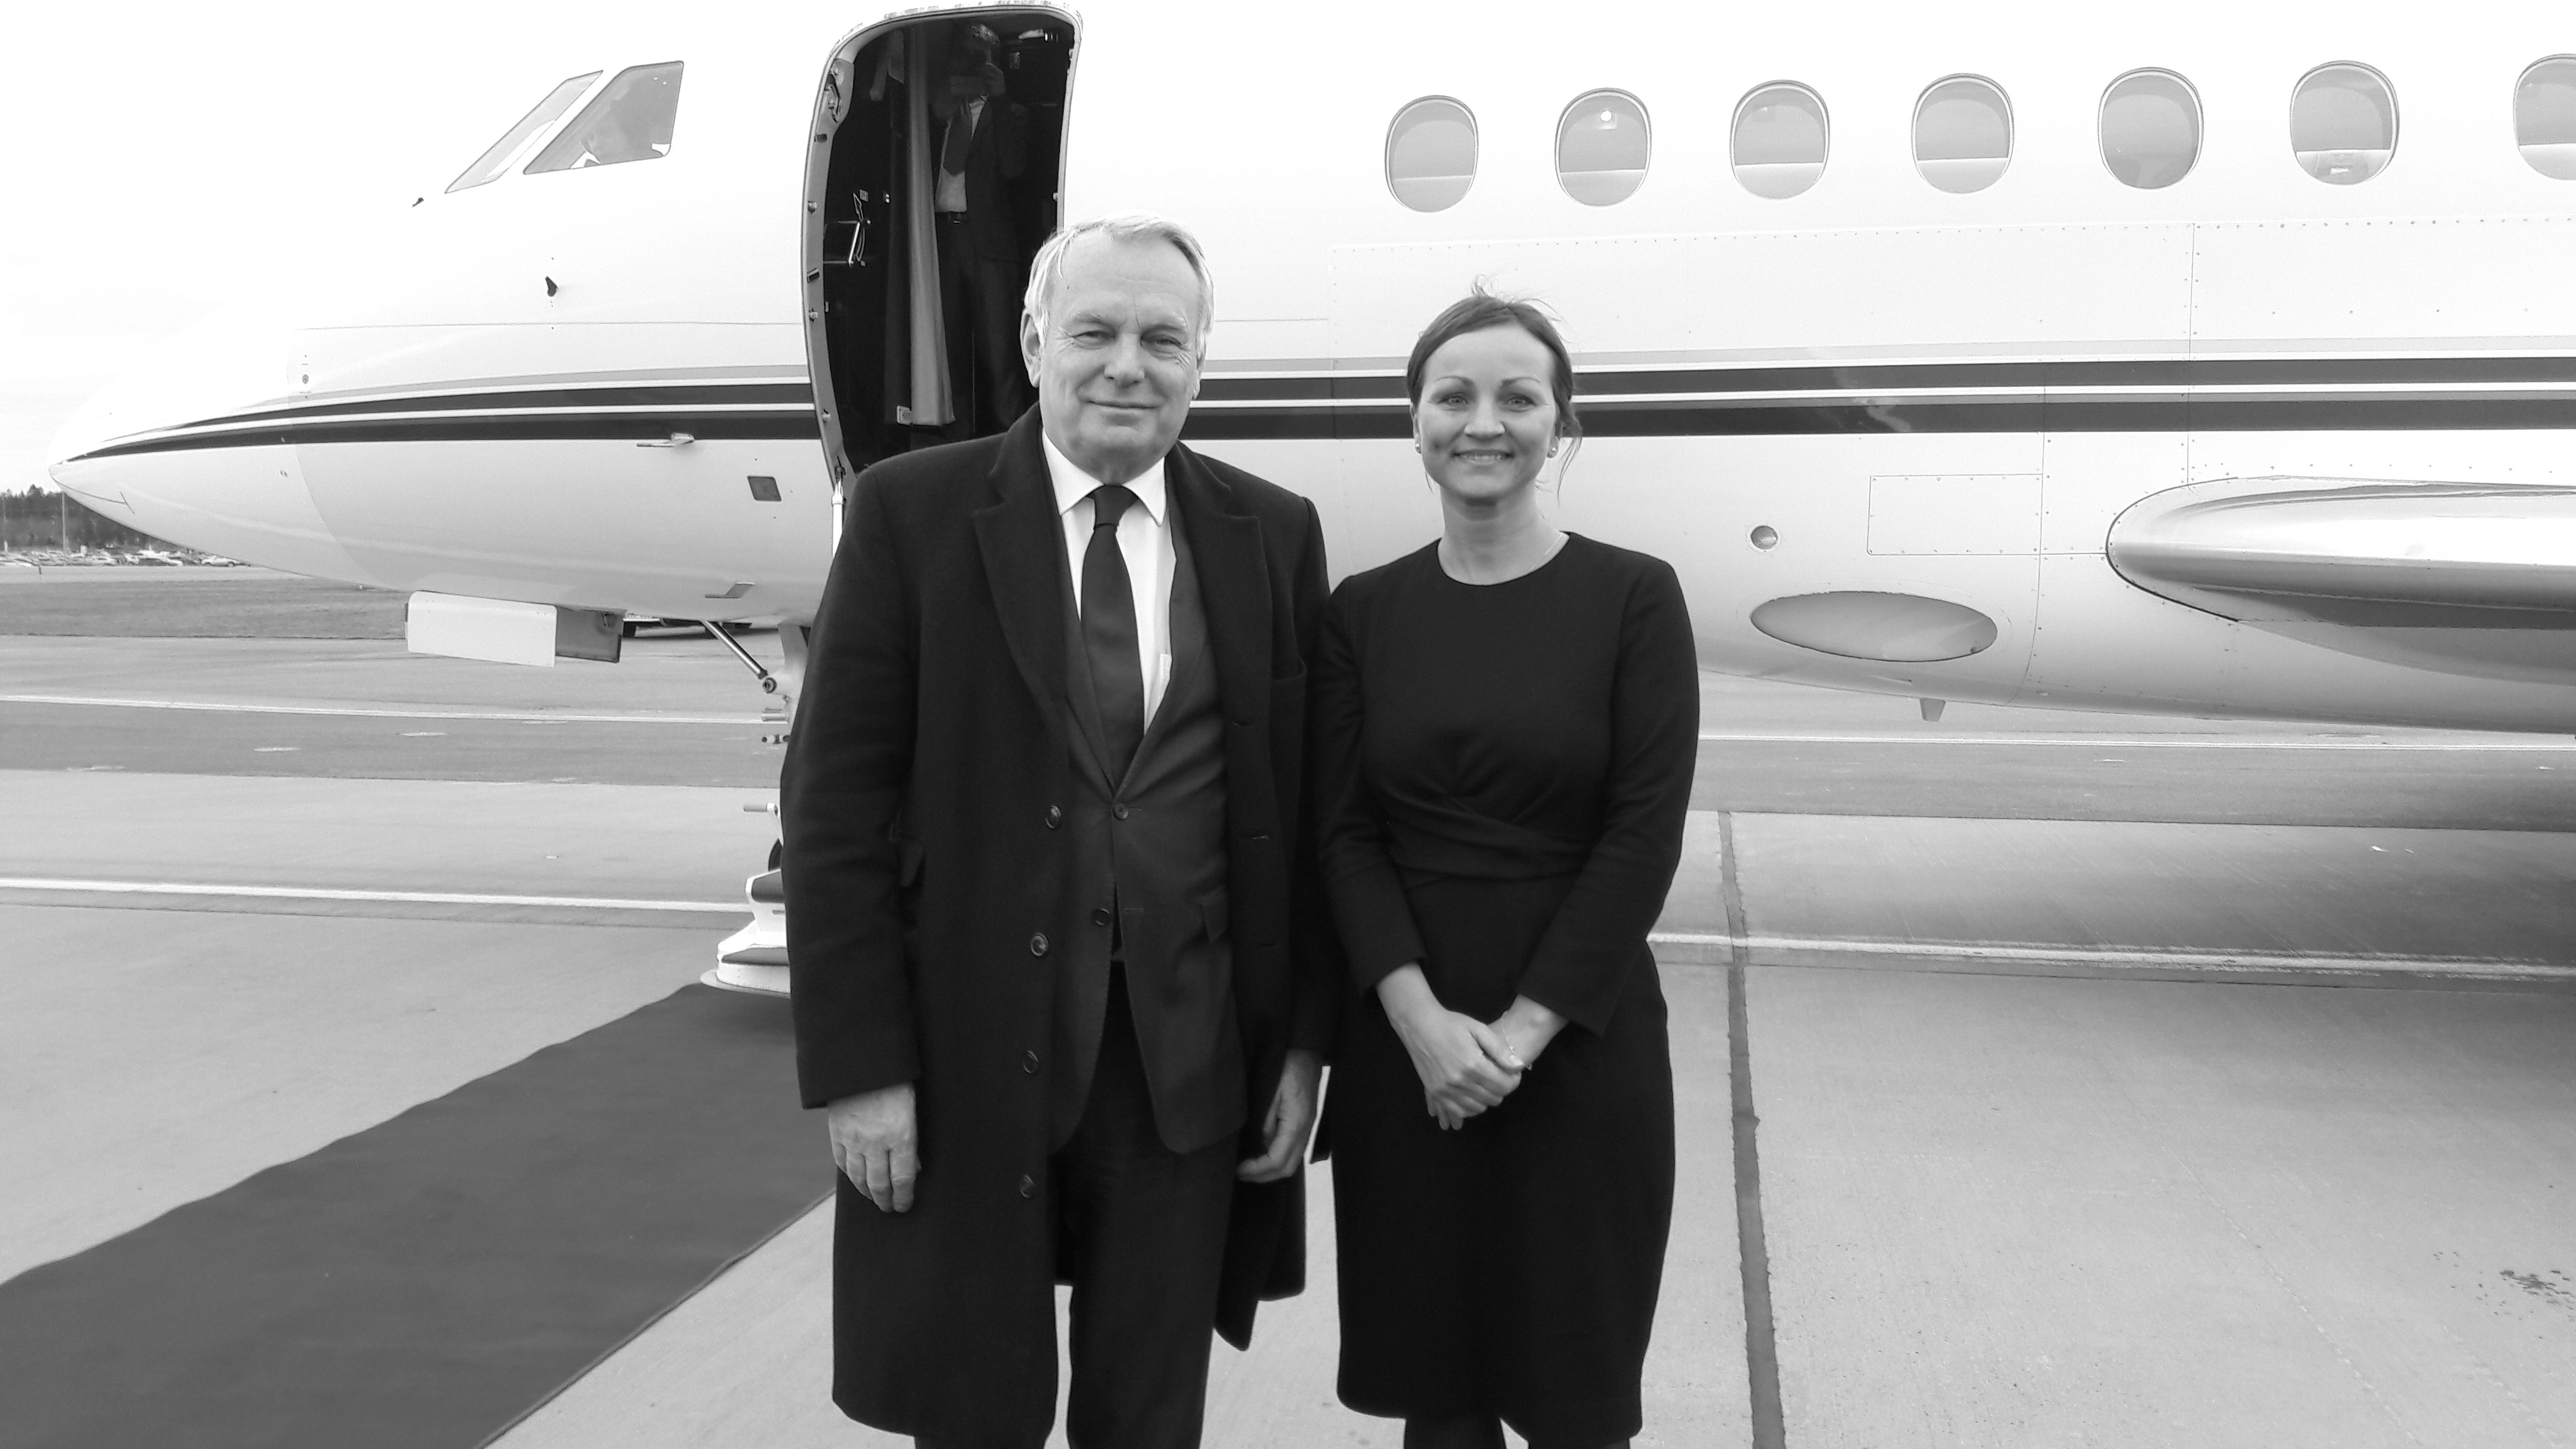 Frankrikes utrikesminister Jean-Marc Ayrault och Katrin André (mars 2017)